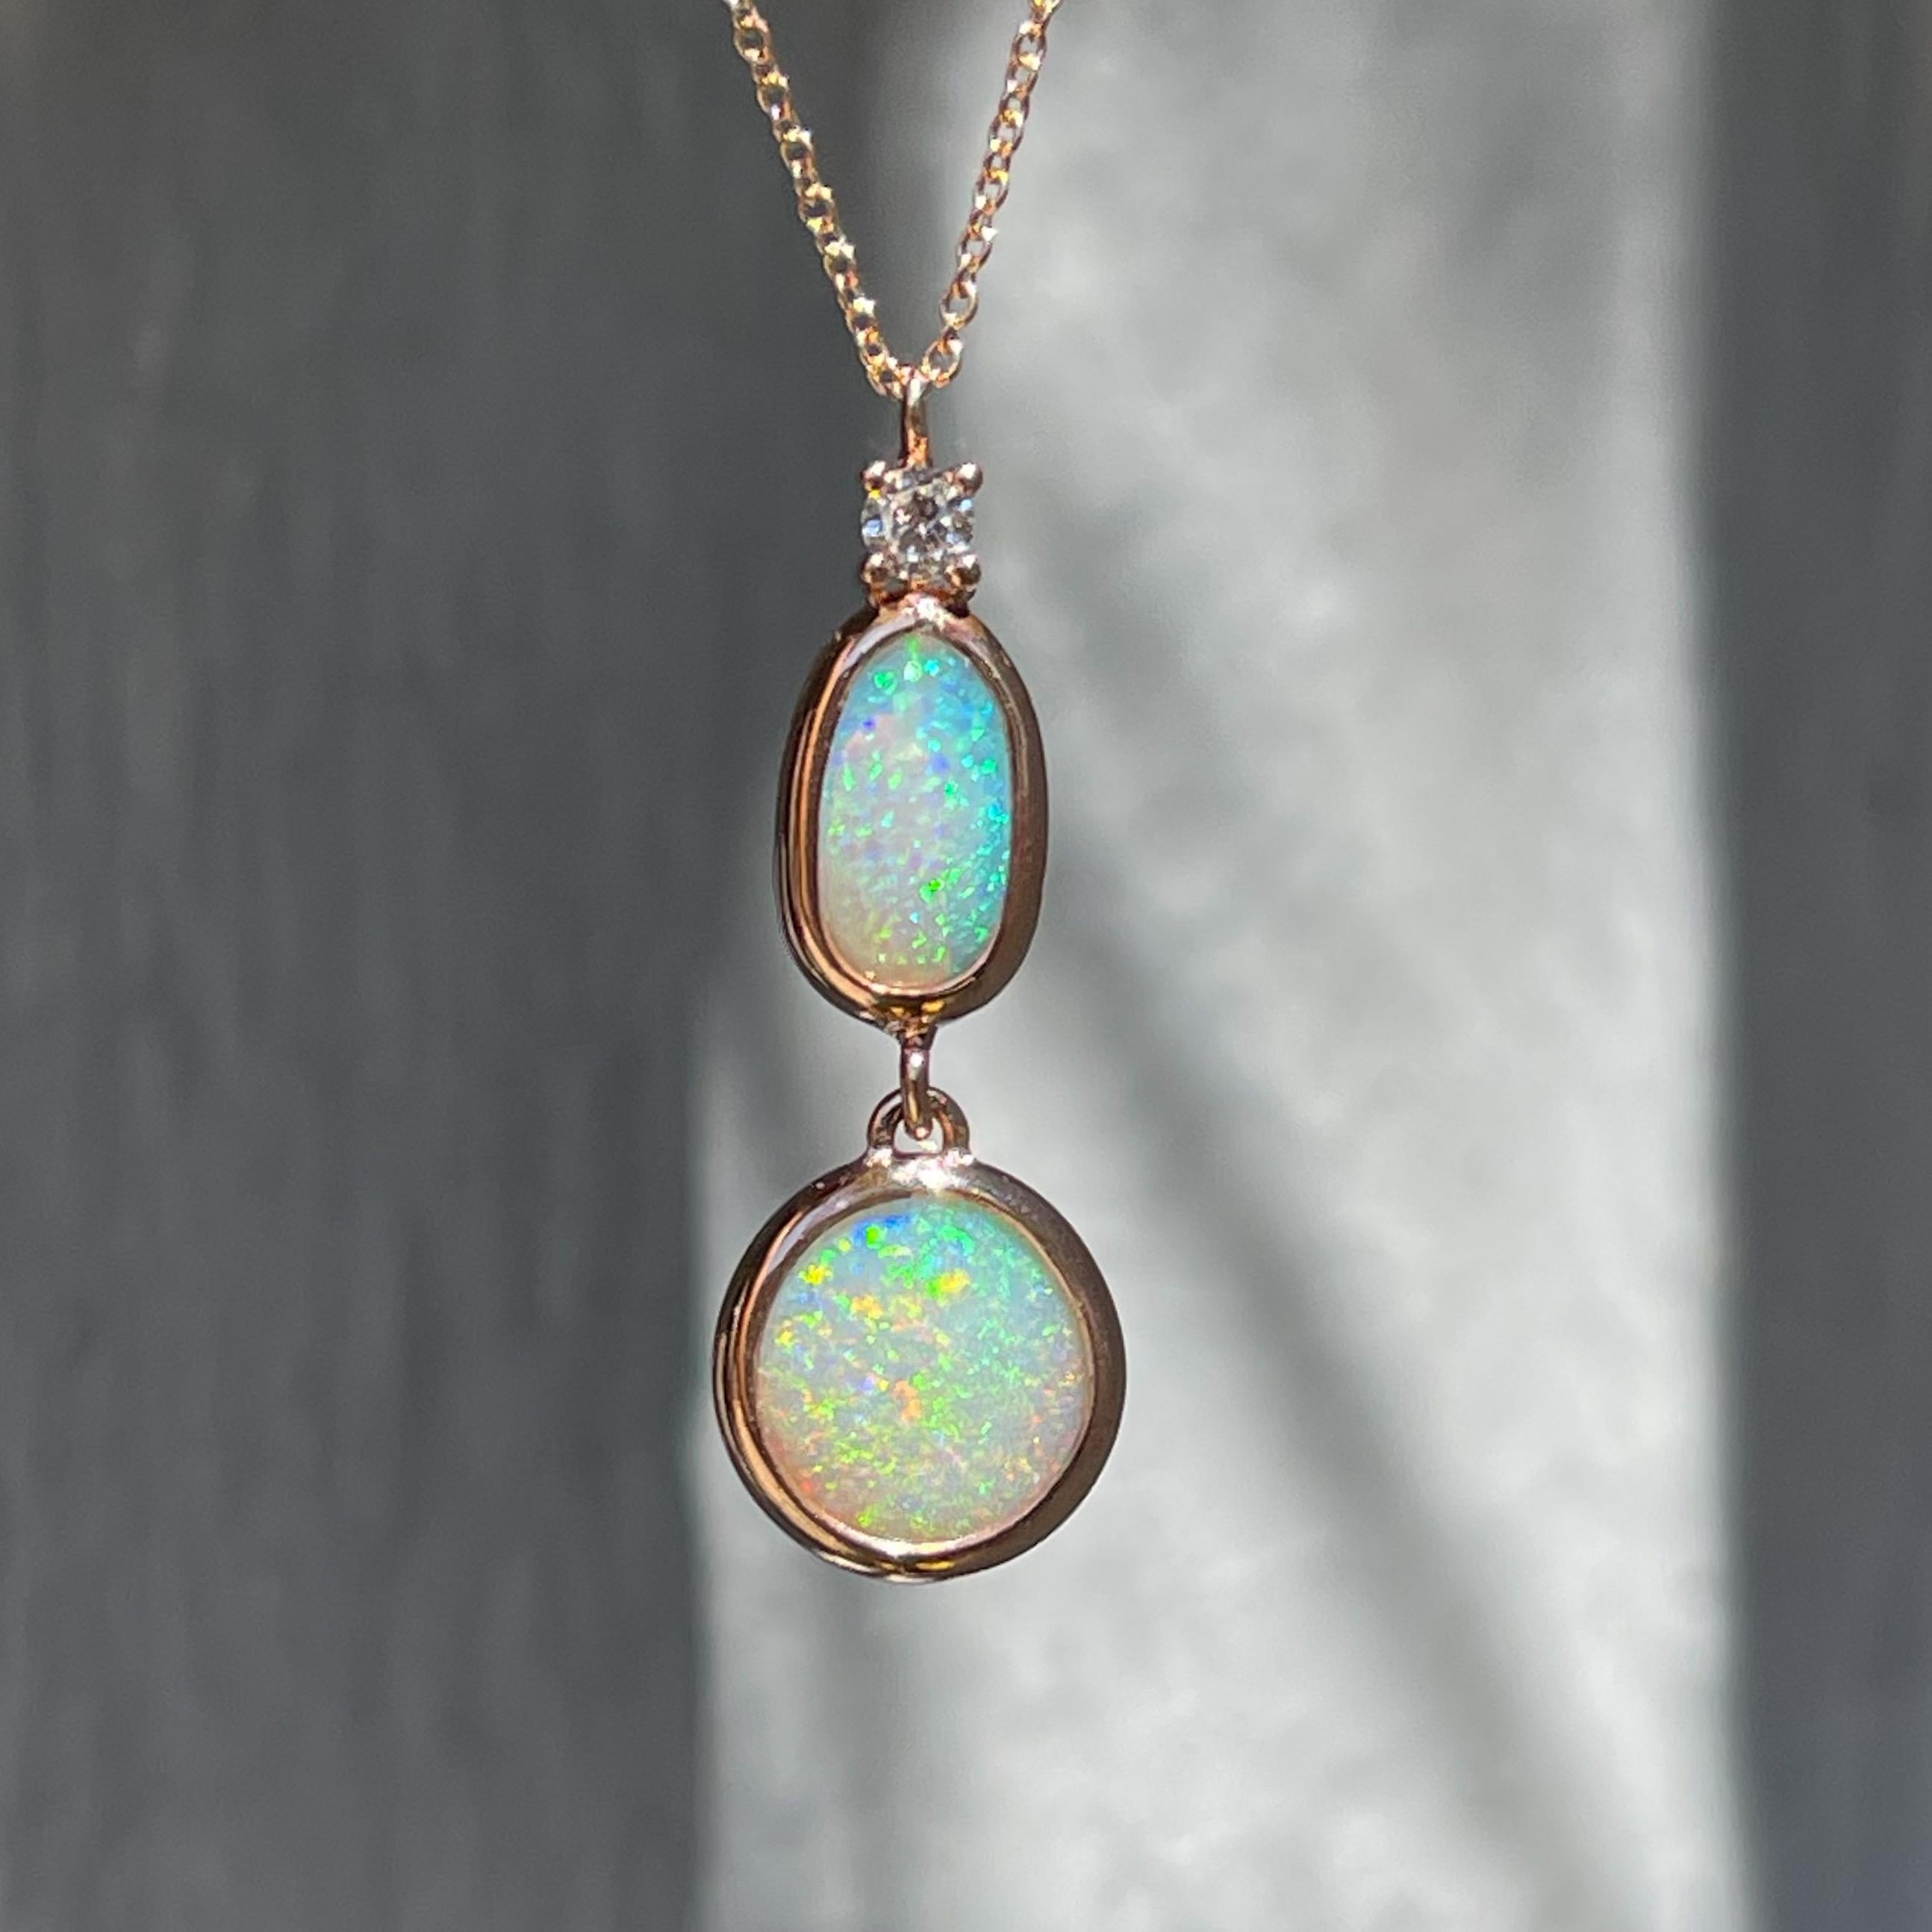 Les opales Lightning Ridge oscillent avec grâce dans ce collier d'opales australiennes. Serti d'un chaton en or rose, le pendentif en opale équilibre trois pierres visuellement pondérées. Un diamant étincelant est perché au sommet et s'articule